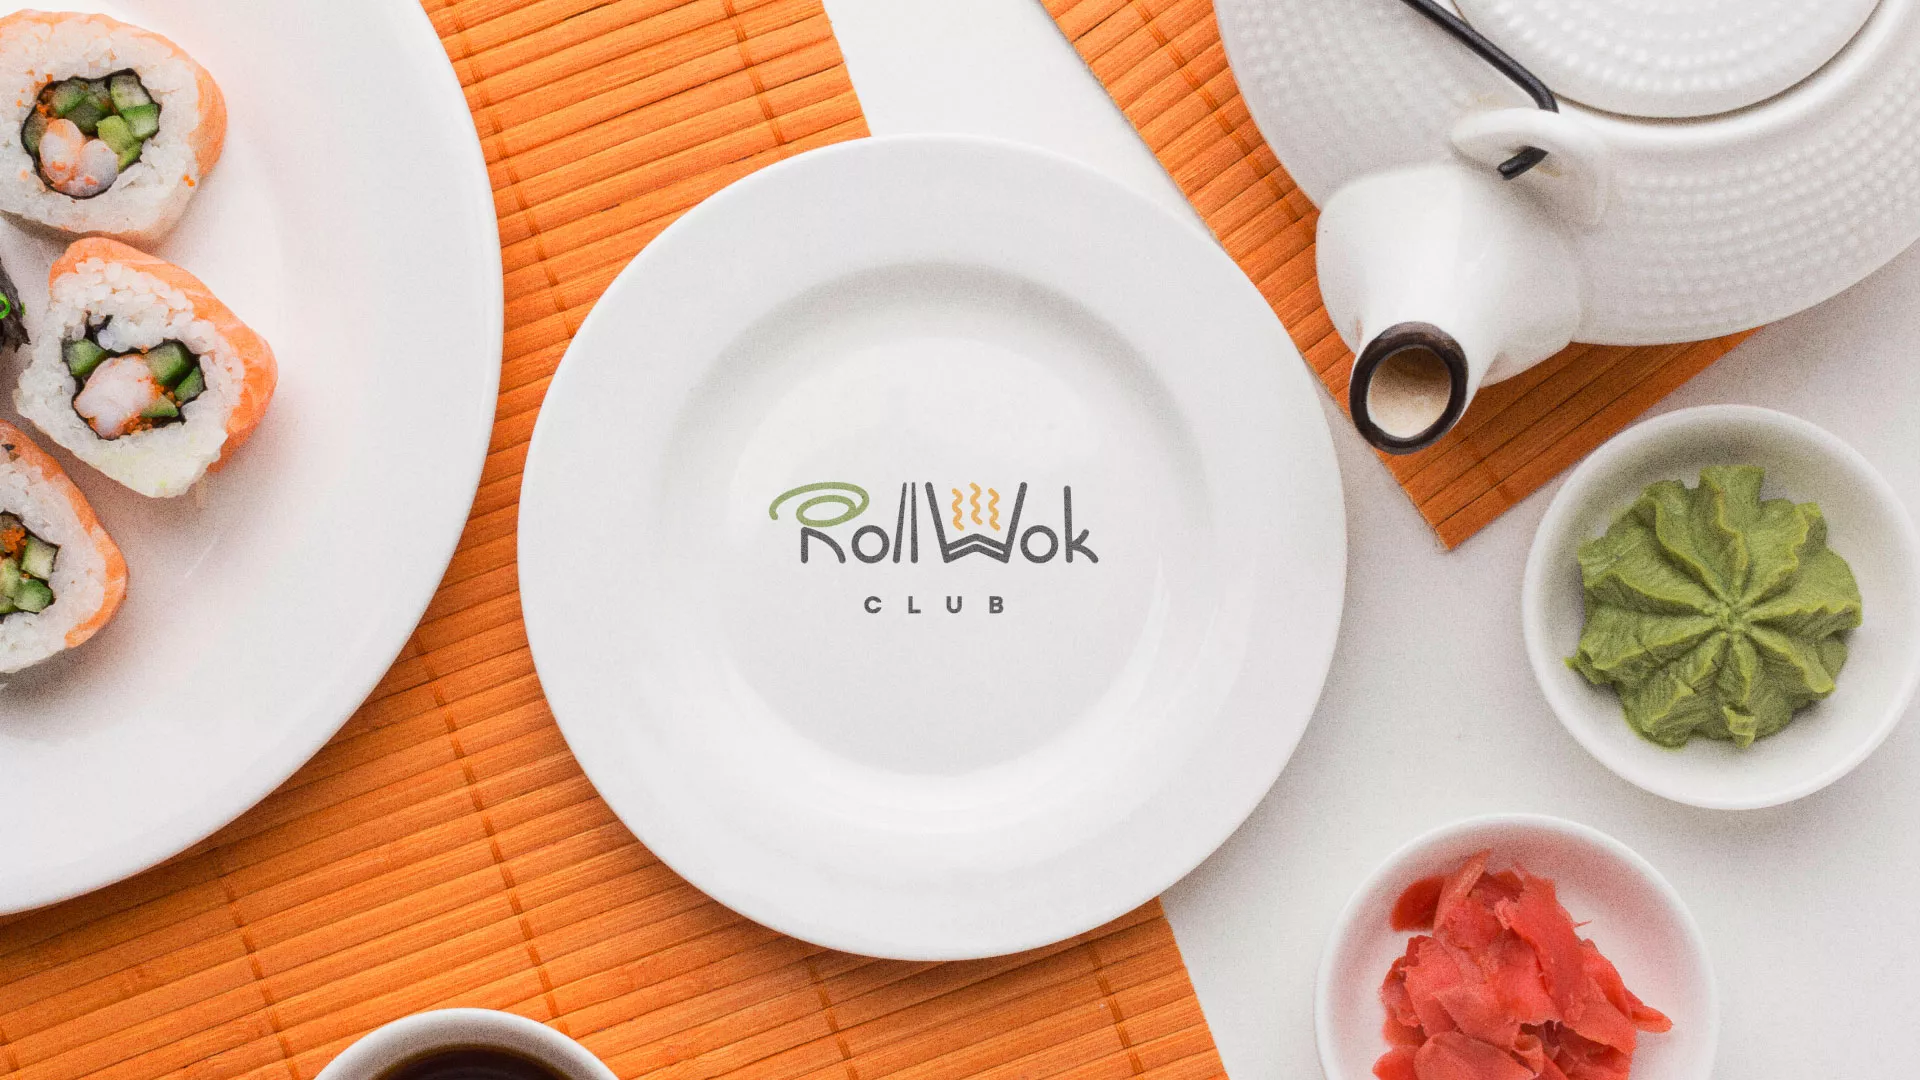 Разработка логотипа и фирменного стиля суши-бара «Roll Wok Club» в Щербинке